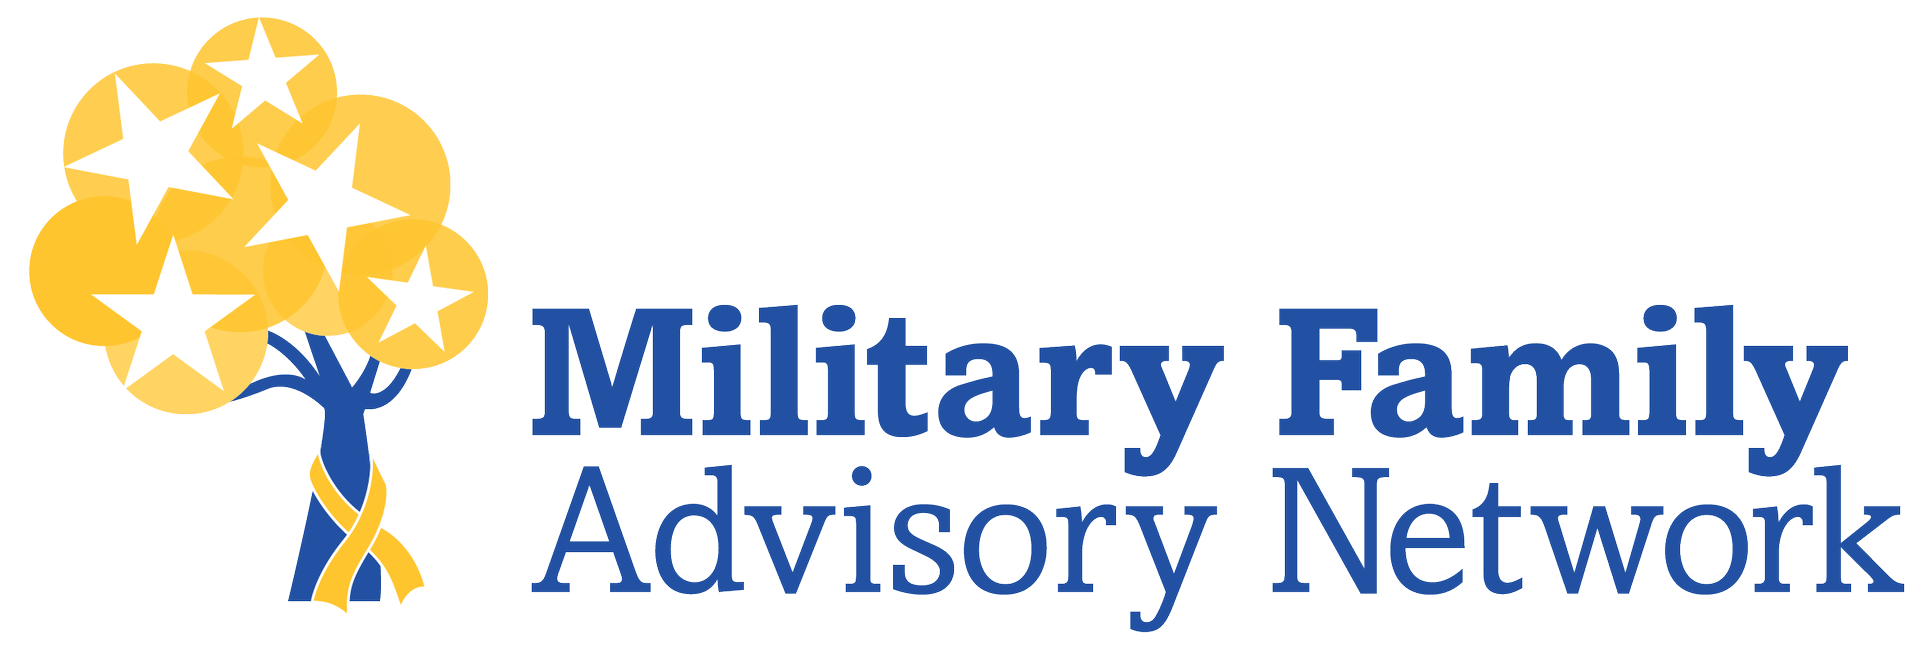 Military Family Advisory Network